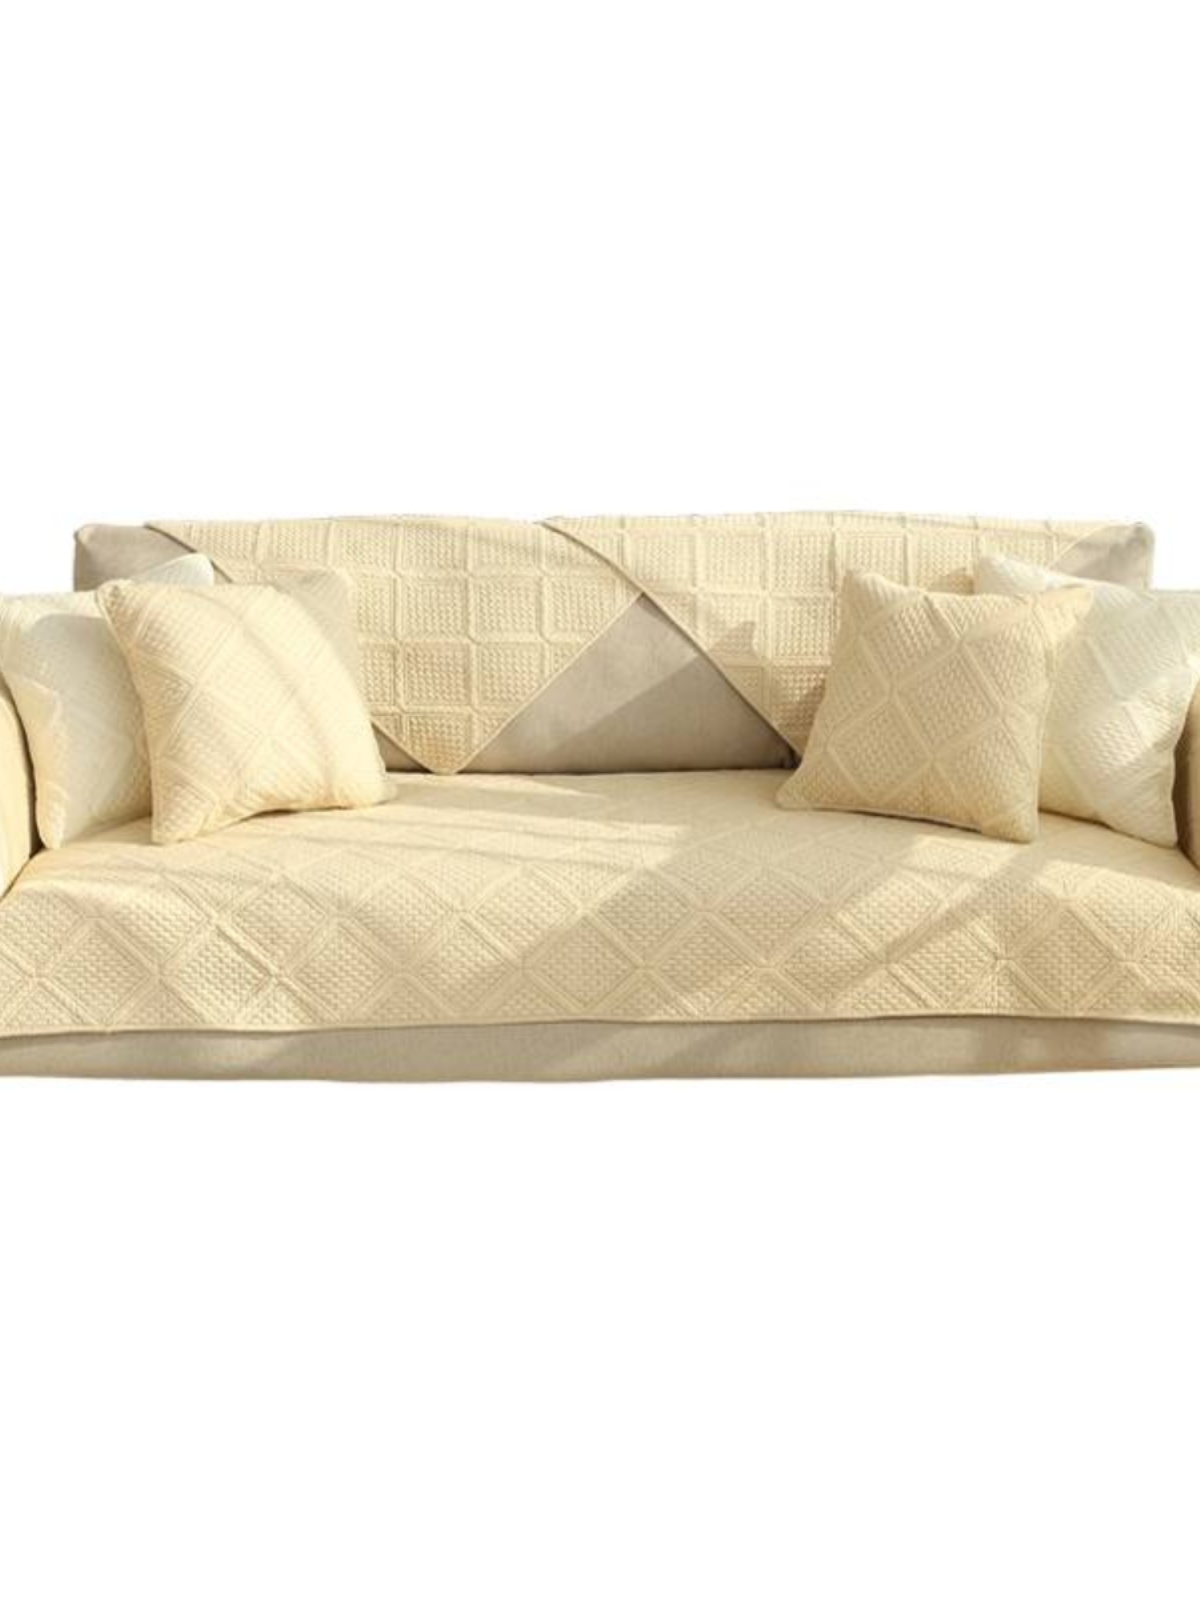 全棉布艺沙发垫简约现代客厅四季通用纯色组合沙发坐垫罩巾套定做